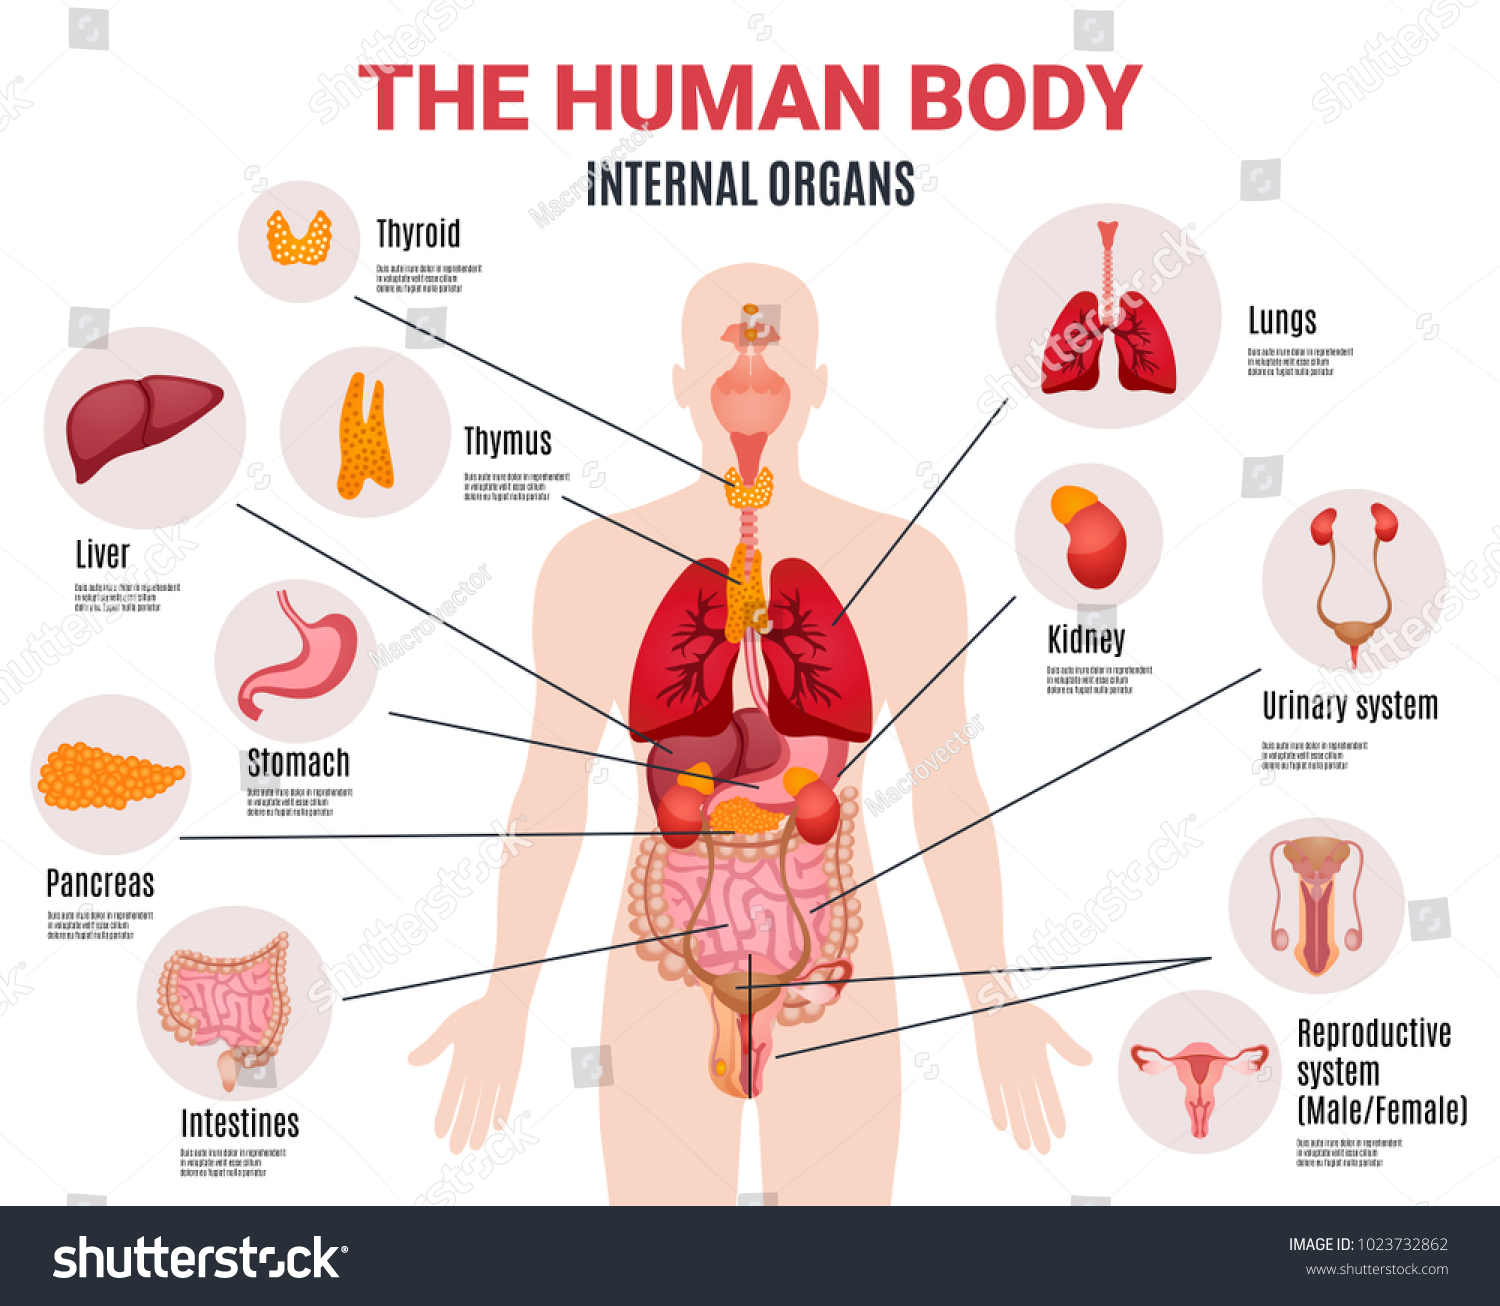 116 519 Internal organs of the human body Snímků, stock fotografií a